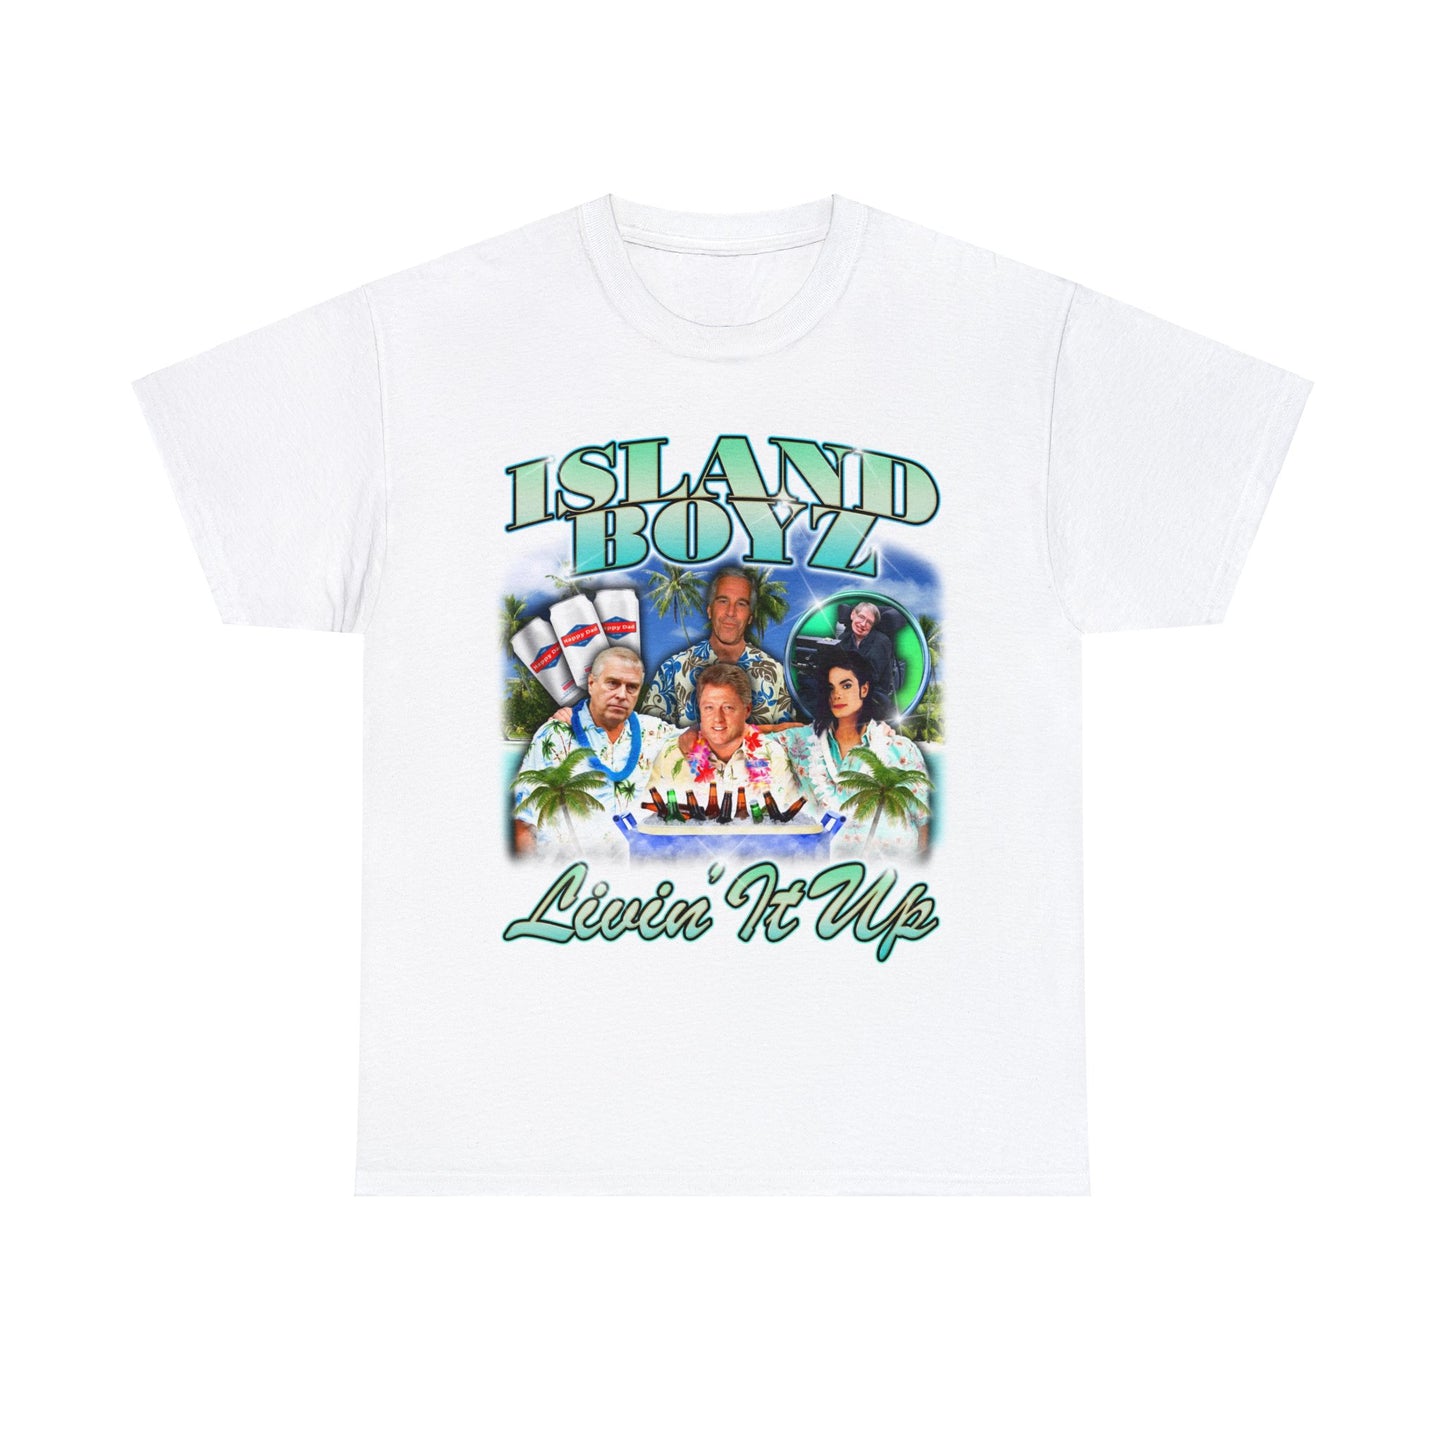 Island Boyz T-Shirt